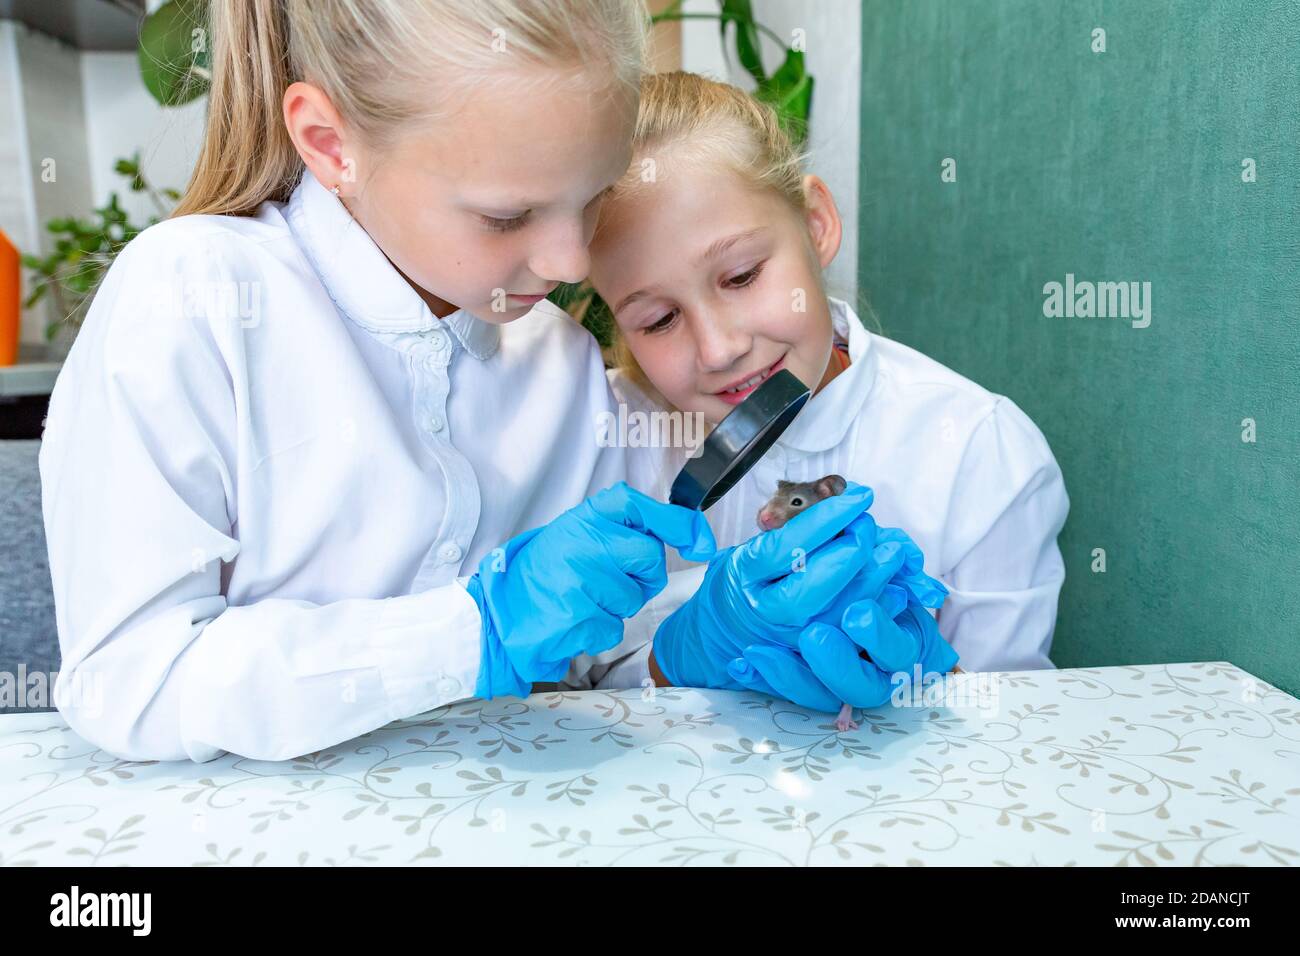 Deux filles blanches blondes, 8-9 ans, portant des gants médicaux bleus, étudient une souris grise sous une loupe. Document de recherche en biologie, zoologie Banque D'Images